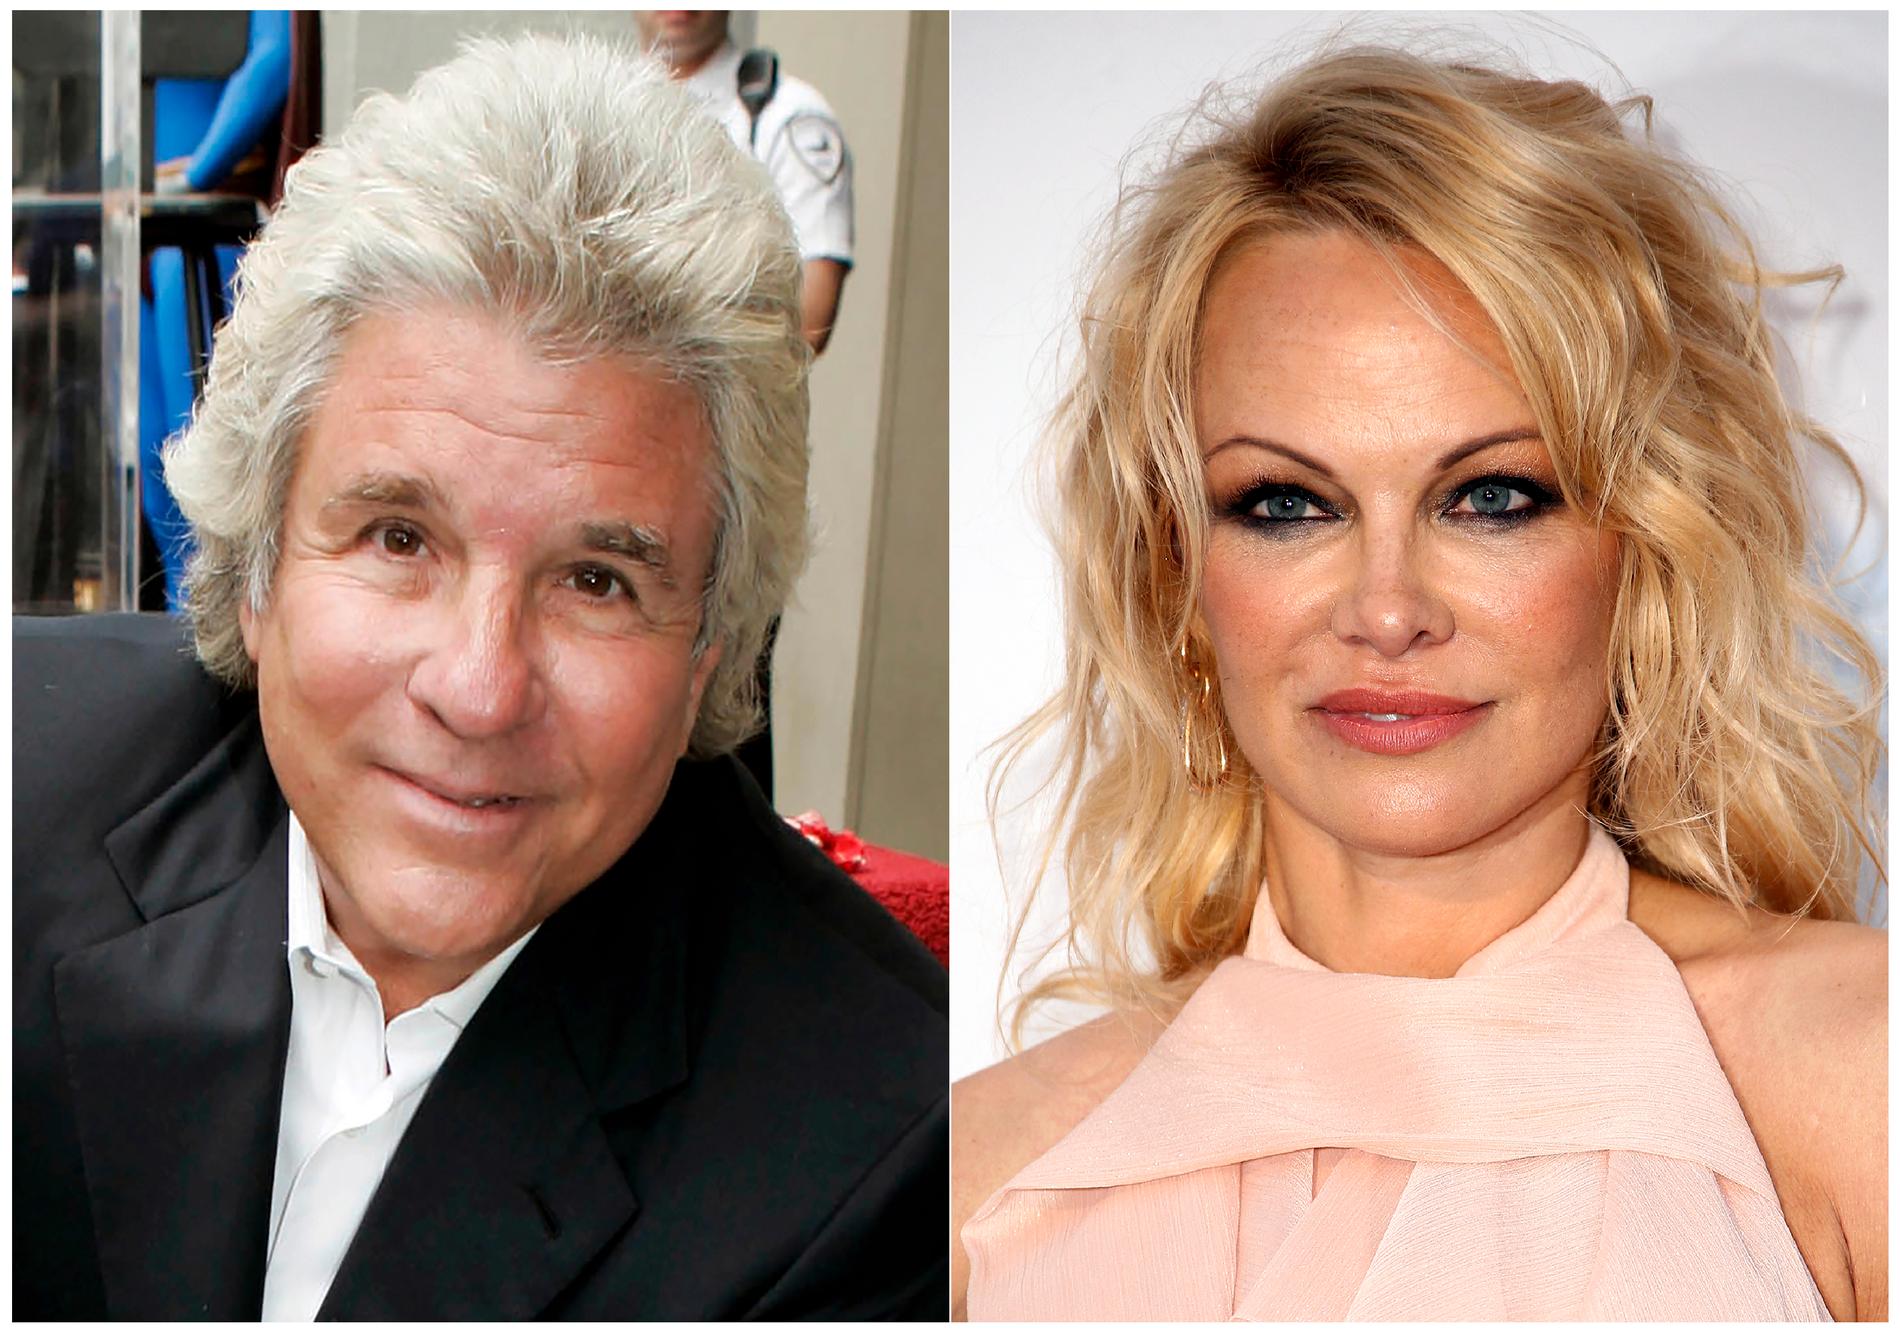 Den 74-årige filmproducenten Jon Peters och 52-åriga Pamela Anderson gifte sig den 20 januari, men har nu separerat.